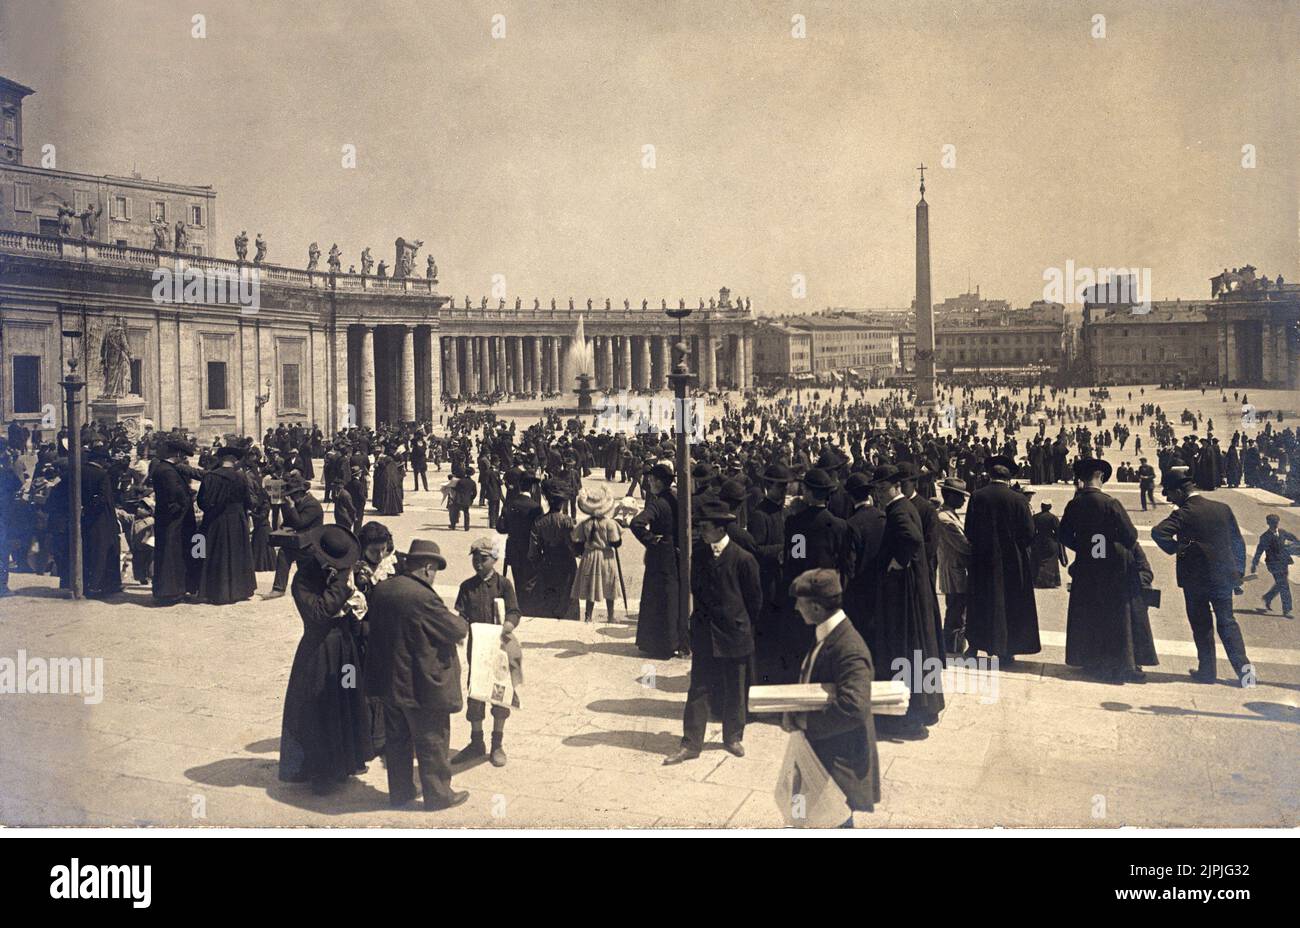 1905 aprox. Roma , Italia : PIAZZA San PIETRO - VATICANO - ROMA - FOTO STORICHE - ITALIA - HISTORIA - venditore di giornali ambulante - strillone - giornalaio - Plaza san Pedro --- Archivio GBB Foto de stock